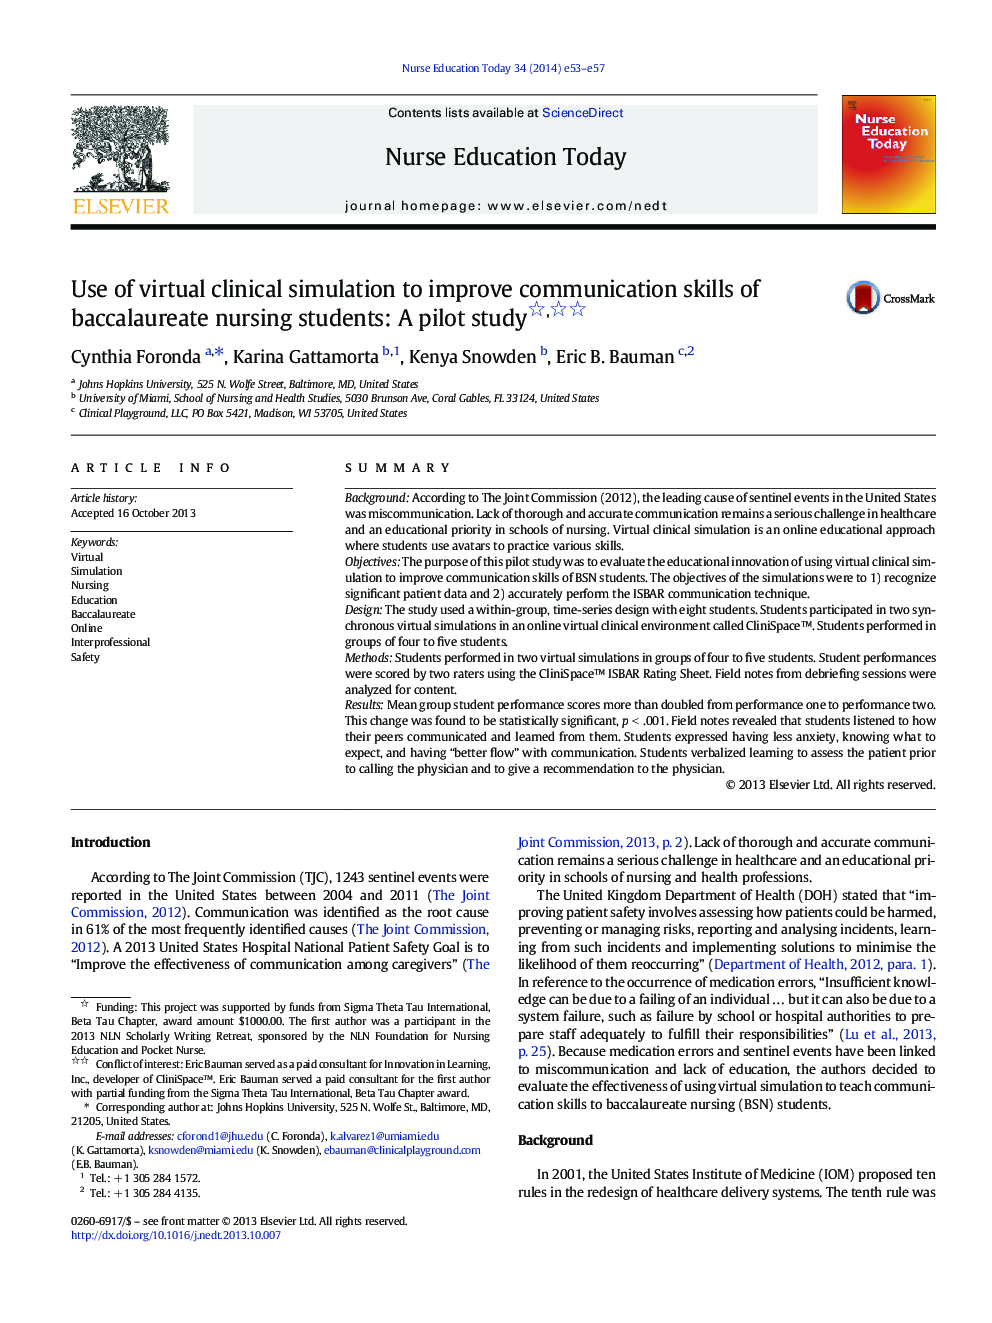 استفاده از شبیه سازی بالینی مجازی برای بهبود مهارت های ارتباطی دانش آموزان دوره کارشناسی پرستاری: یک مطالعه آزمایشی 